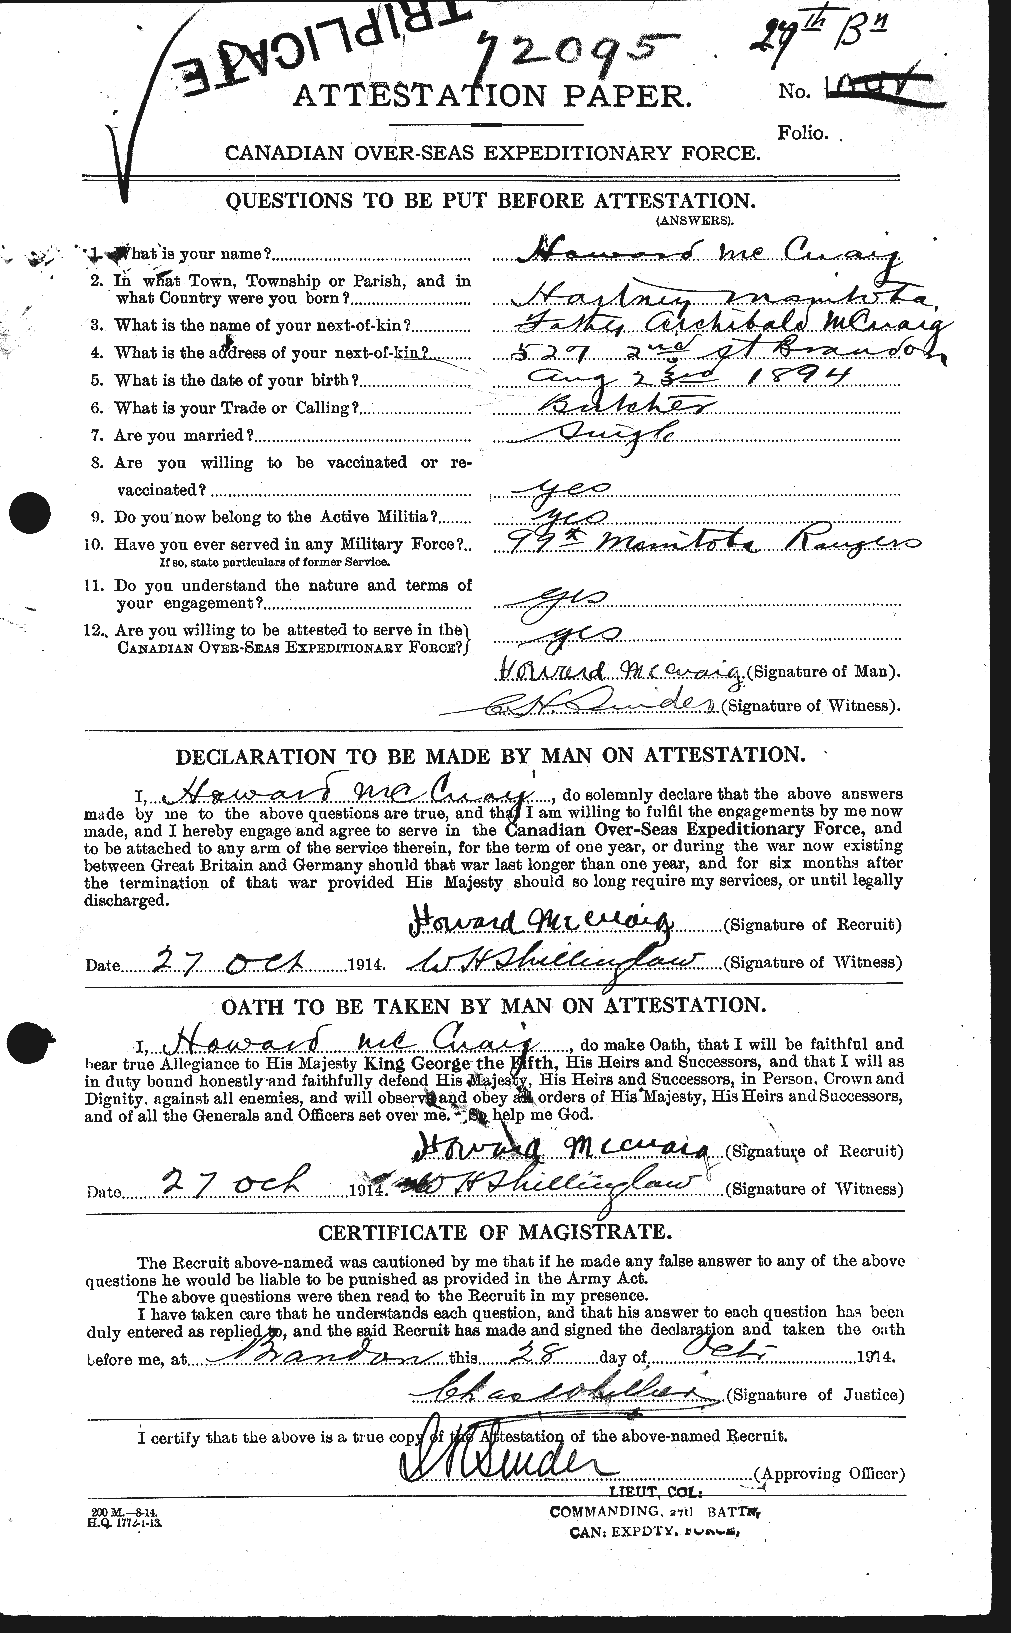 Dossiers du Personnel de la Première Guerre mondiale - CEC 135703a